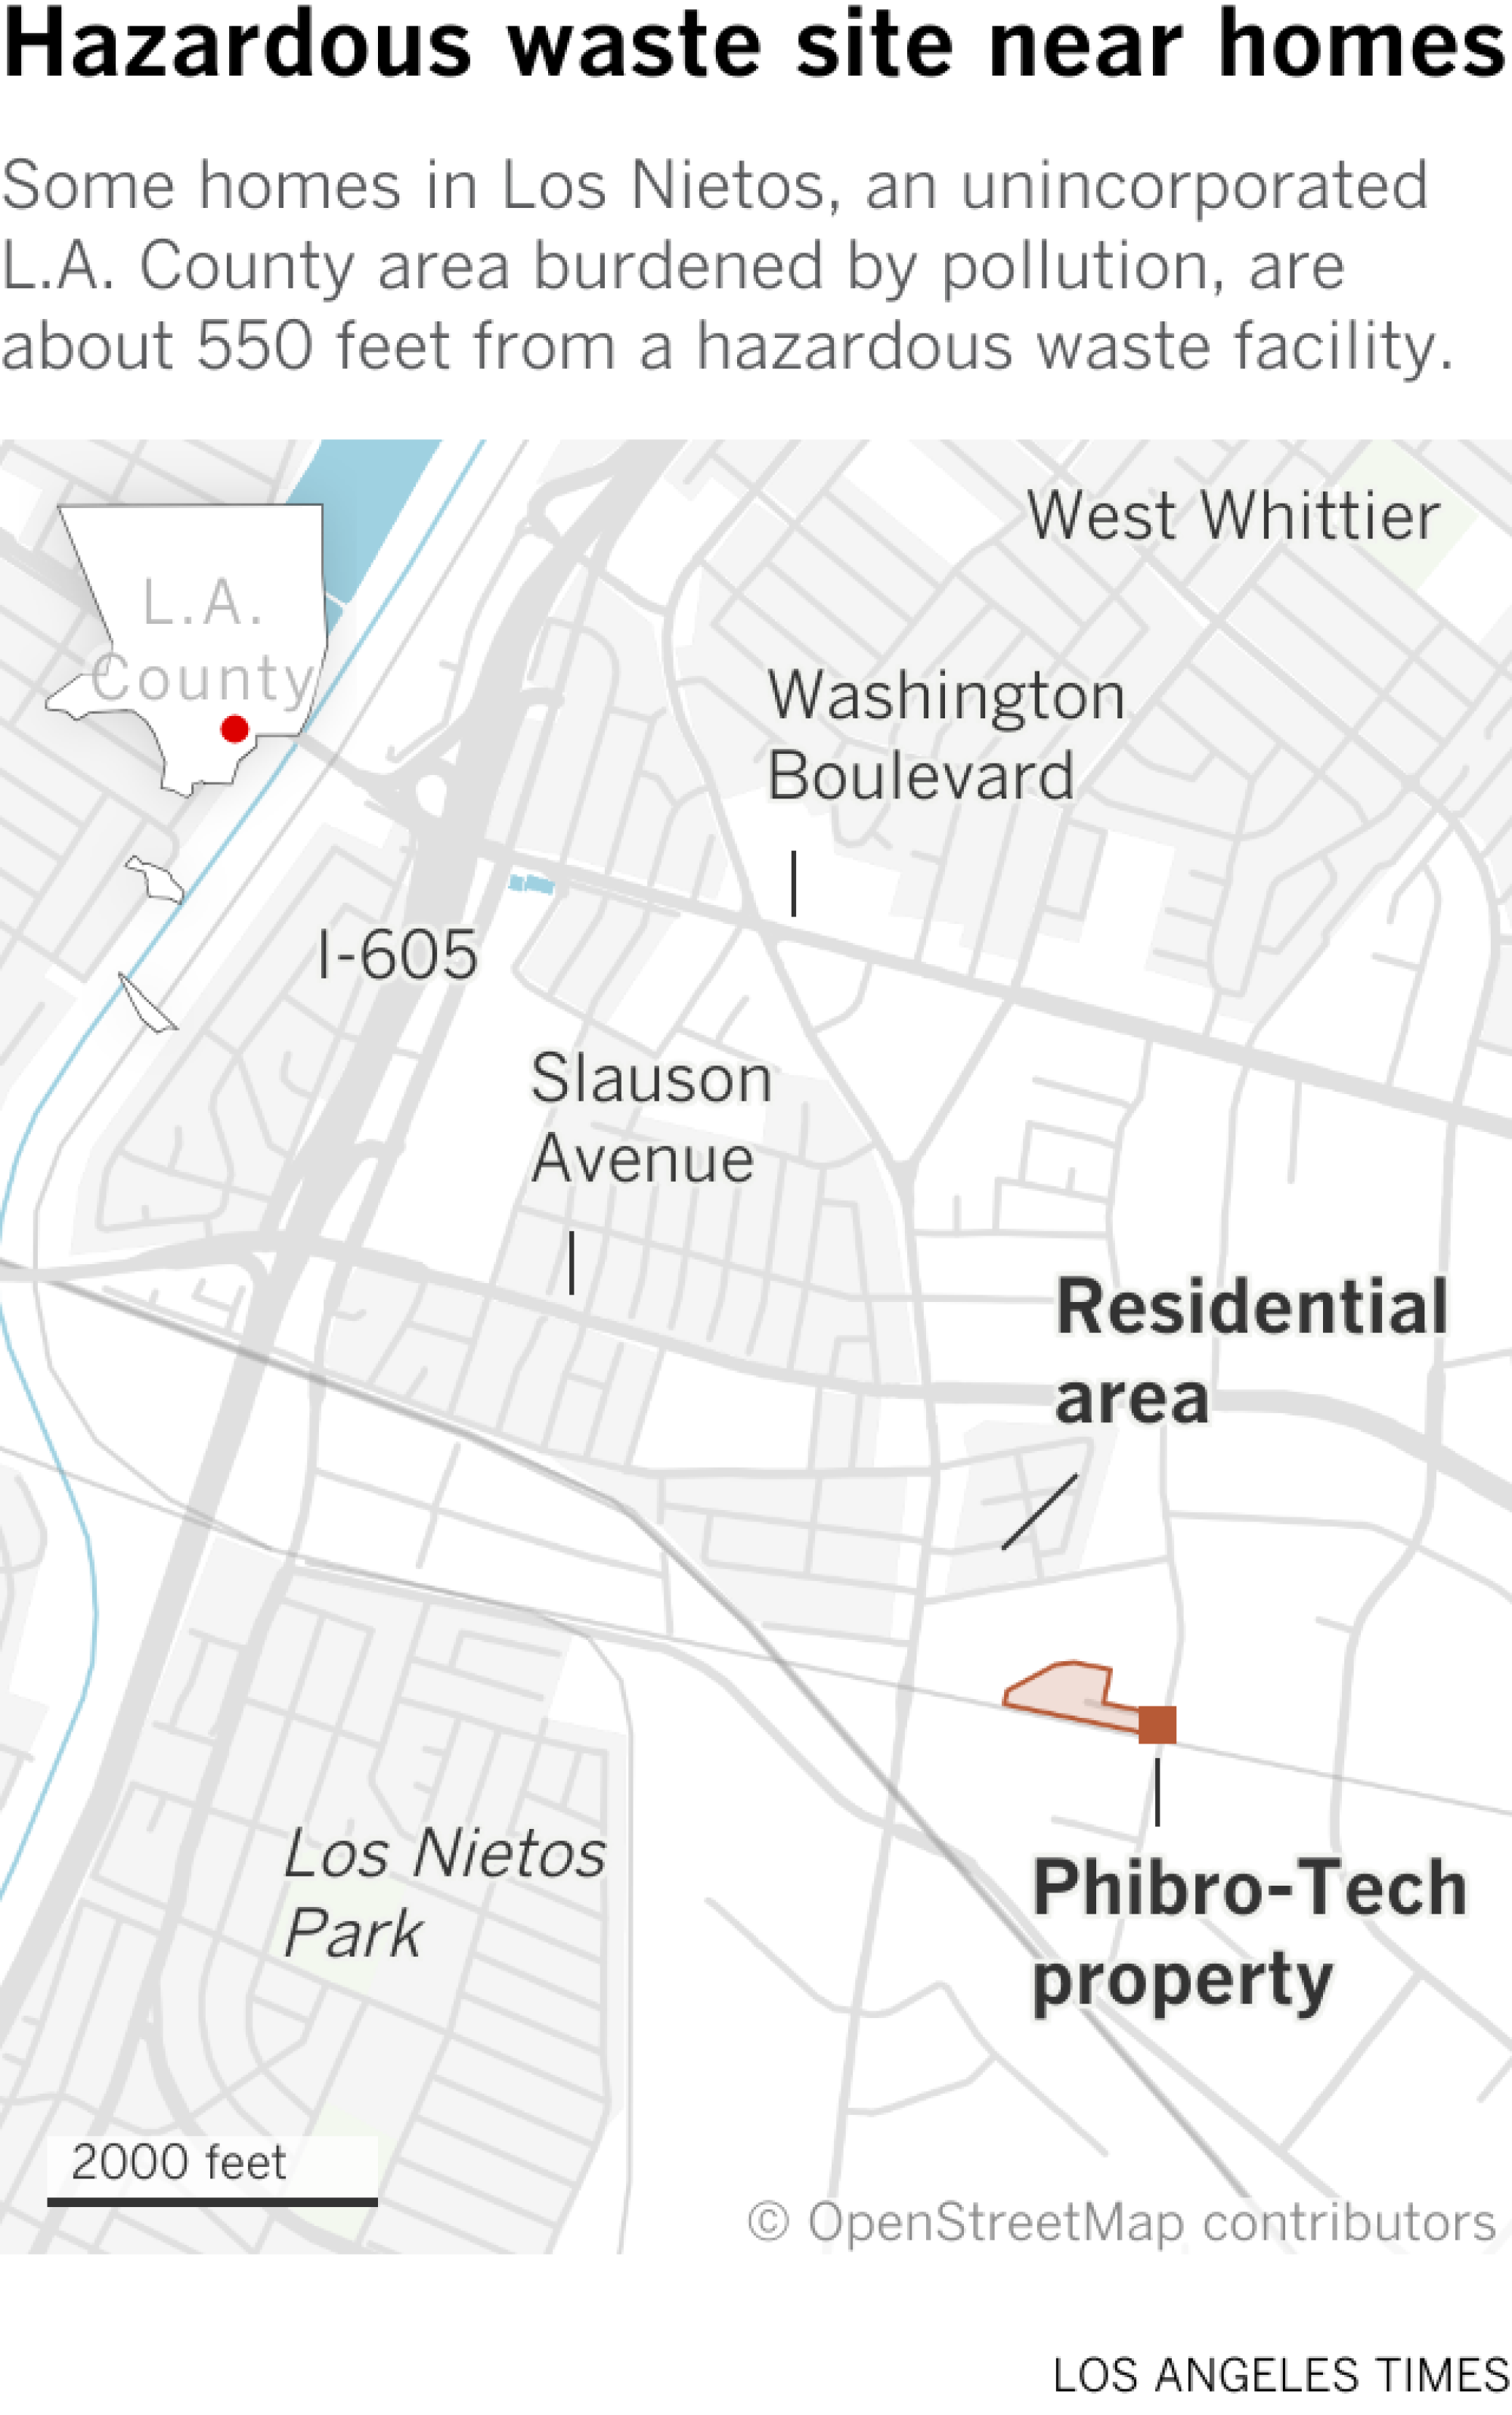 Die Ortungskarte zeigt die Lage der Häuser in Bezug auf Phibro-Tech